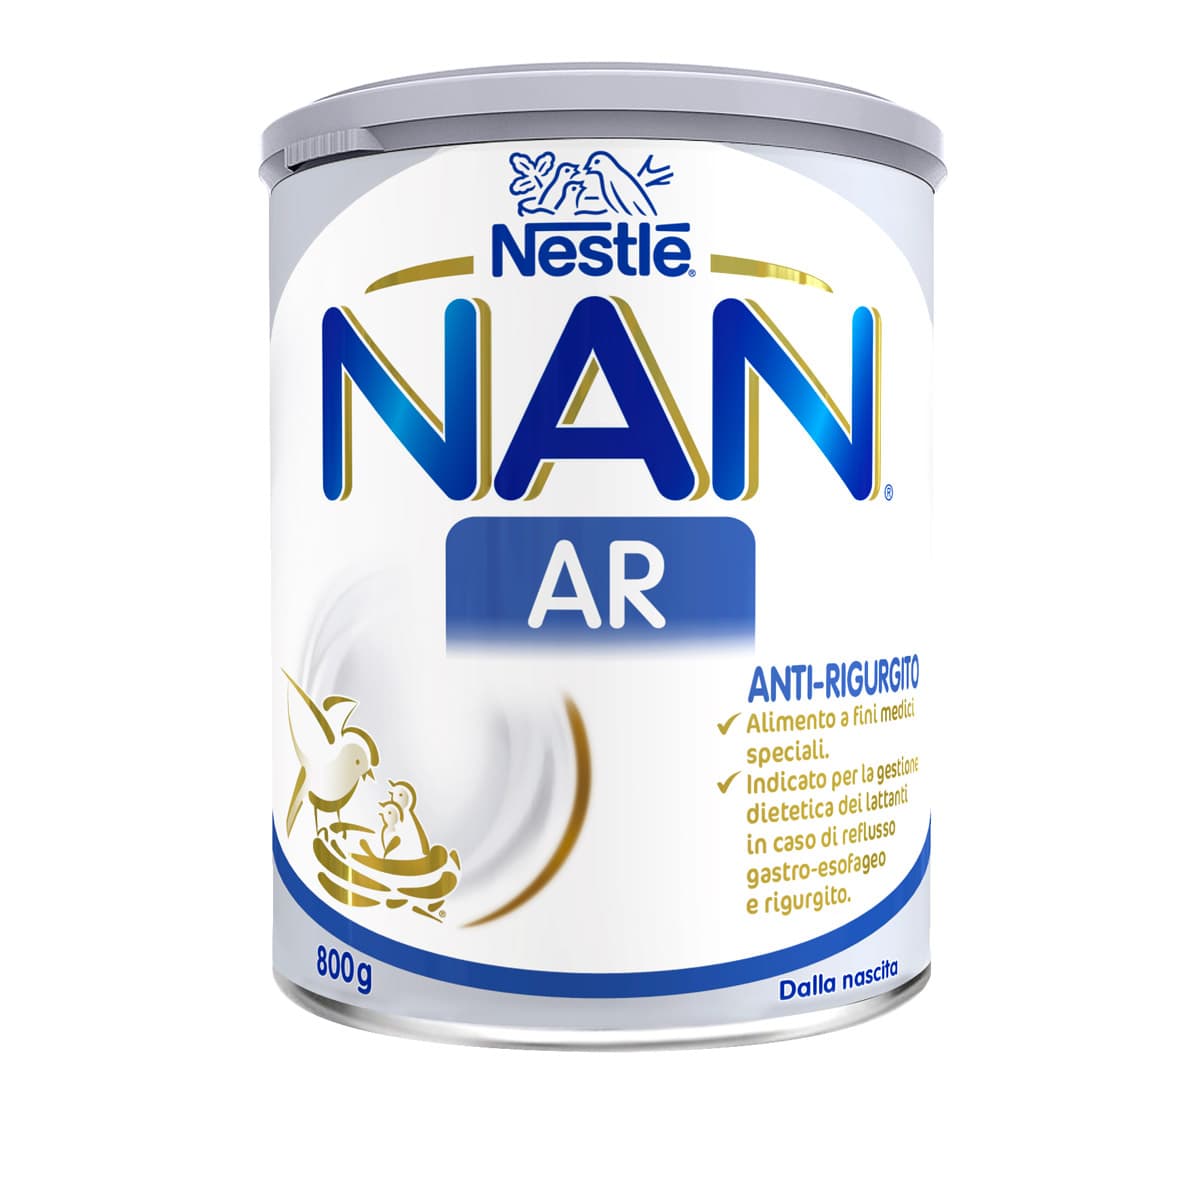 Nestlé NAN AR Anti-Rigurgito 800 g. Alimento a fini medici speciali. Dalla nascita